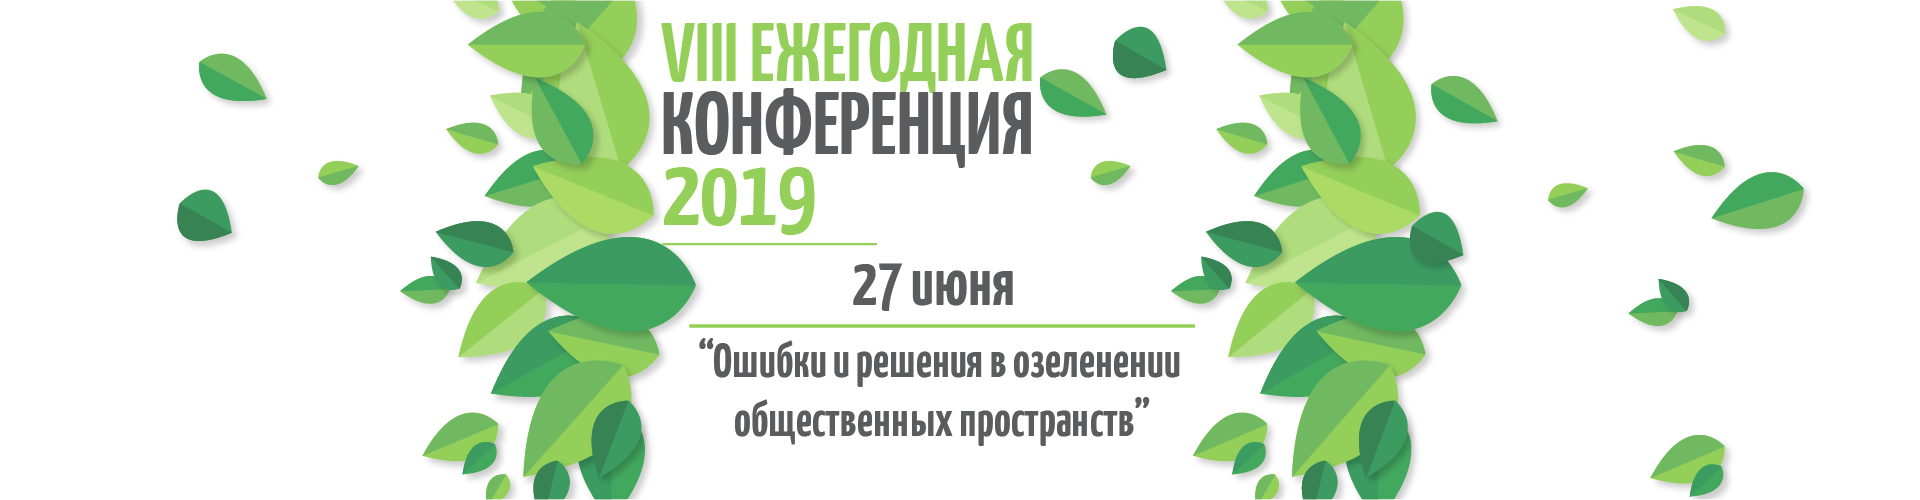 8 ежегодная конференция для городского озеленения